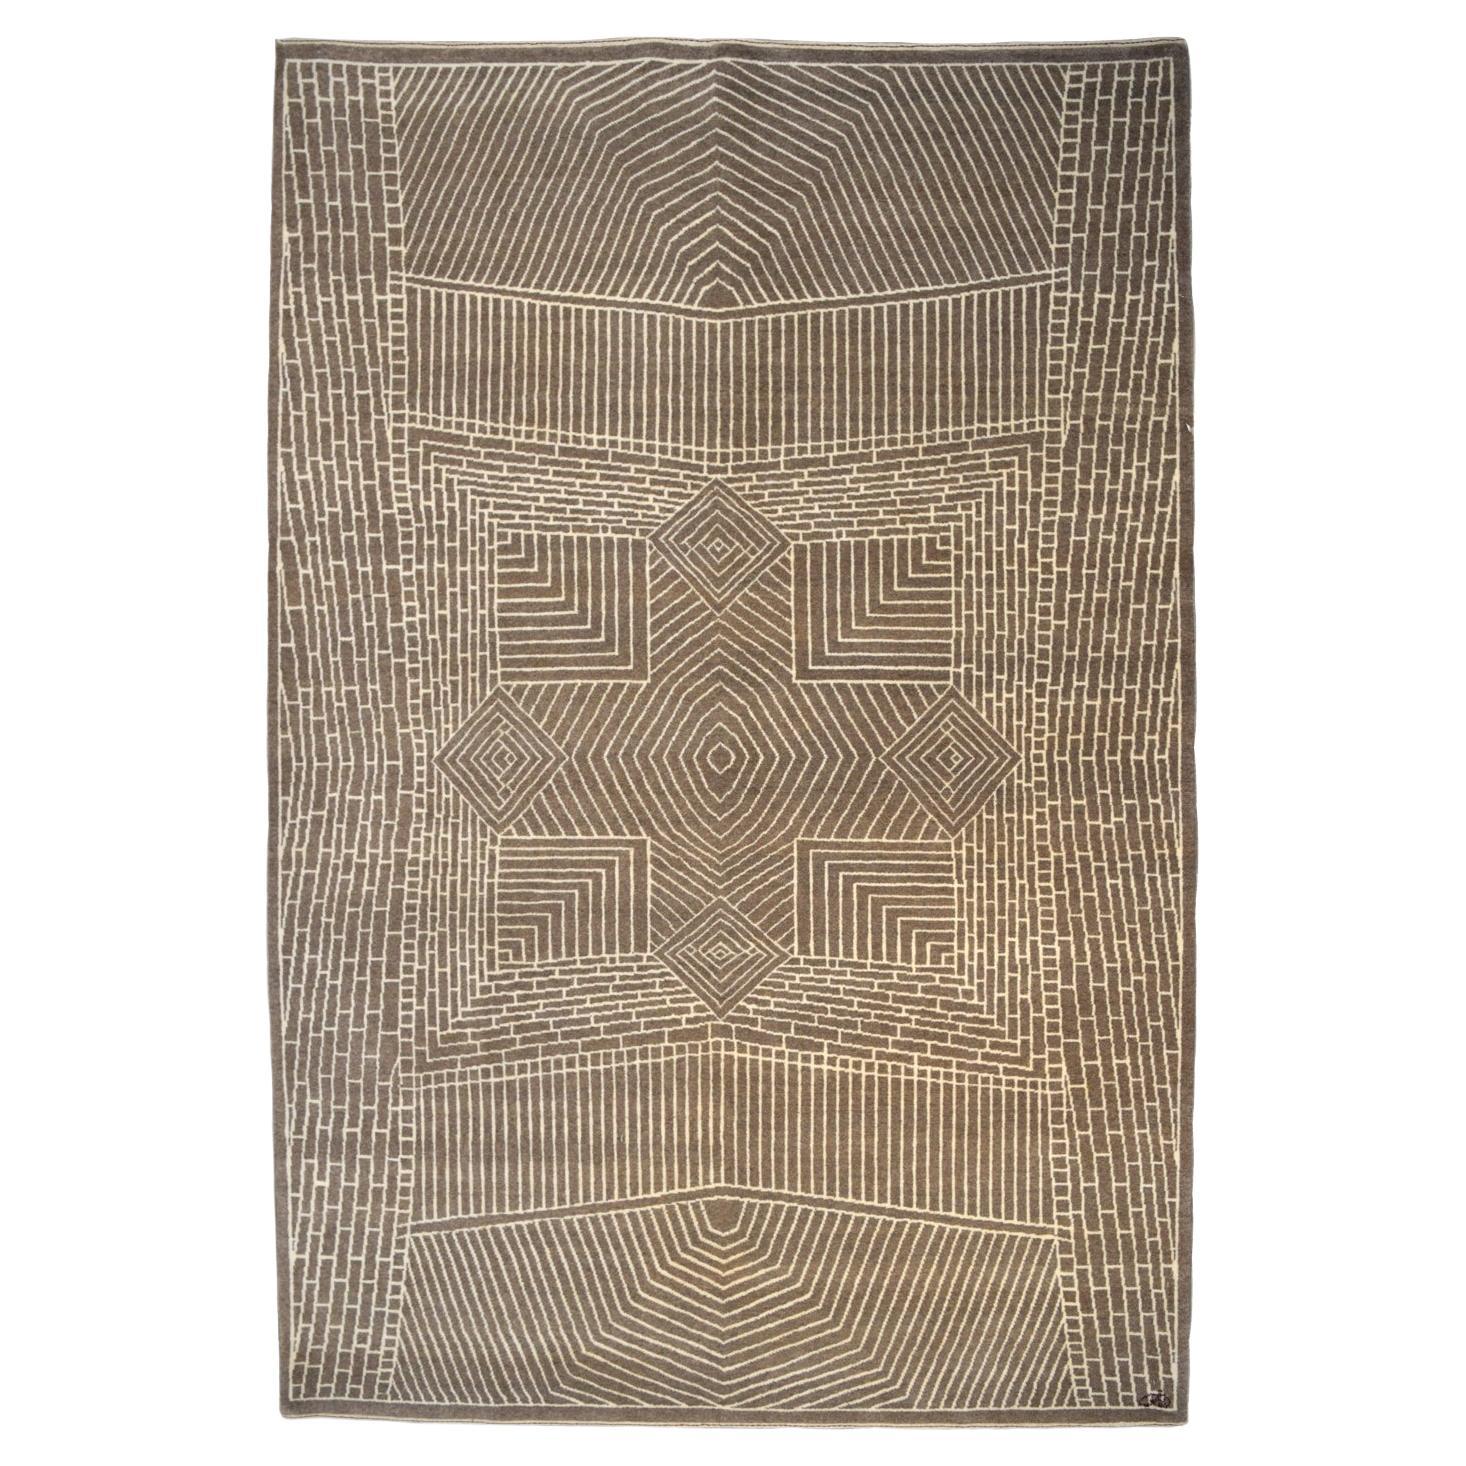 Orley Shabahang "Setareh" Contemporary Wool Persian Rug, 6' x 9'